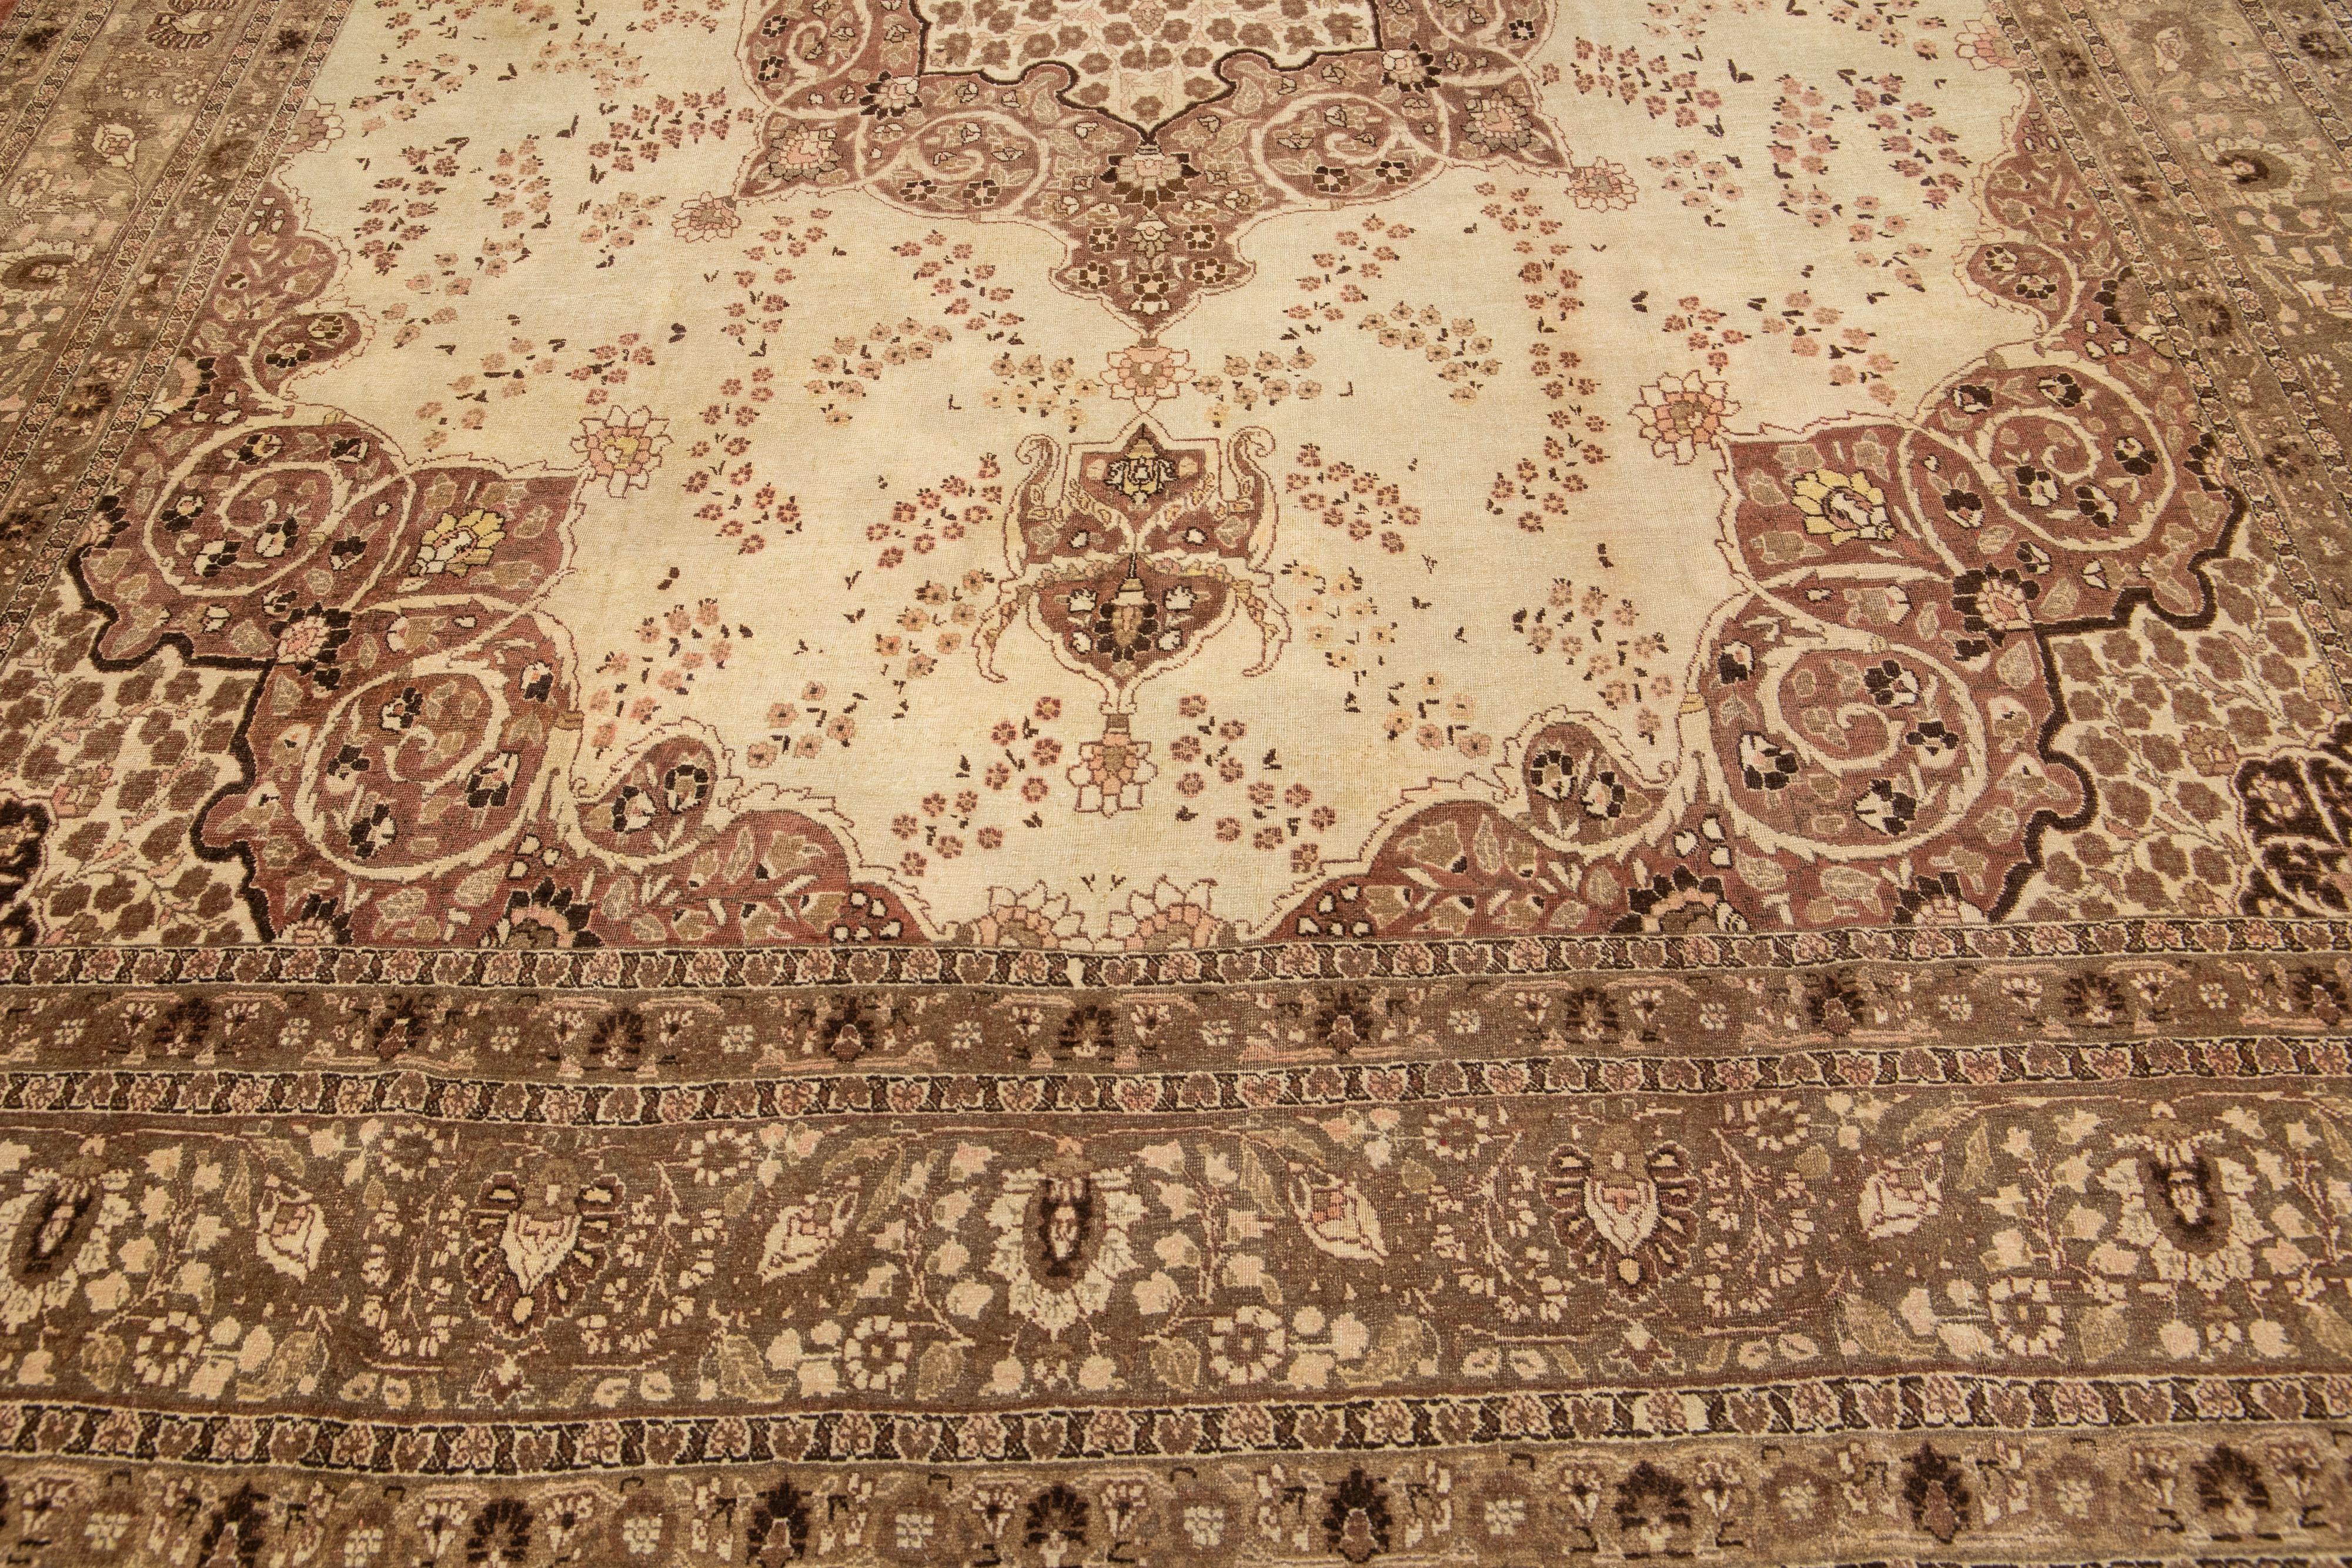 Cet exceptionnel tapis persan en laine Tabriz présente un exquis motif floral traditionnel en médaillon avec un accent pêche saisissant sur un fond beige et marron. Méticuleusement noué à la main, ce tapis ancien est un splendide chef-d'œuvre qui